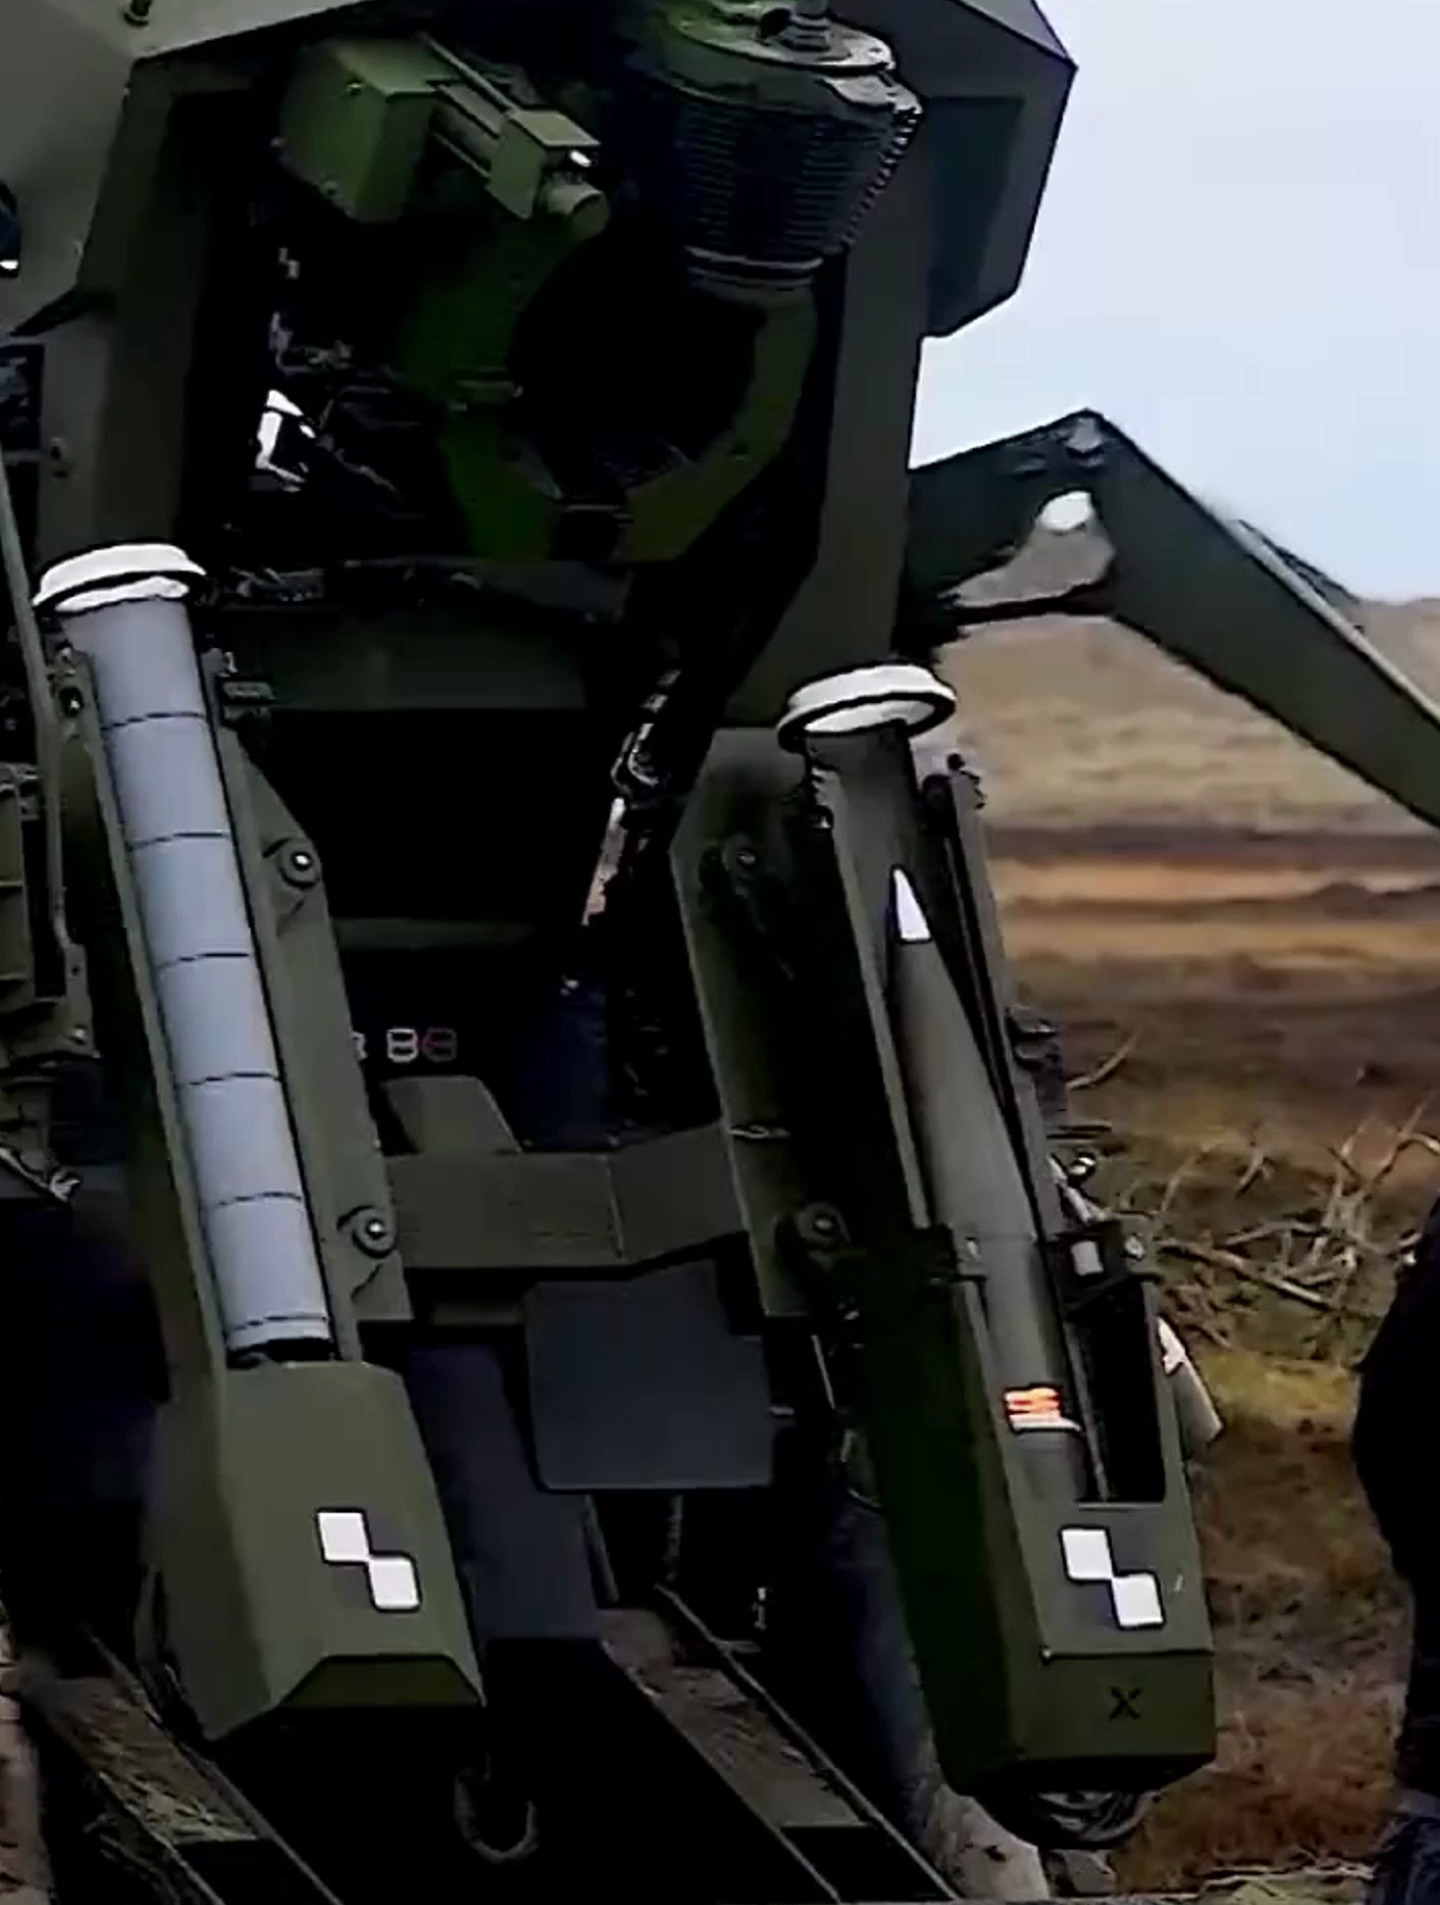 塞尔维亚自行火炮,装弹 发射